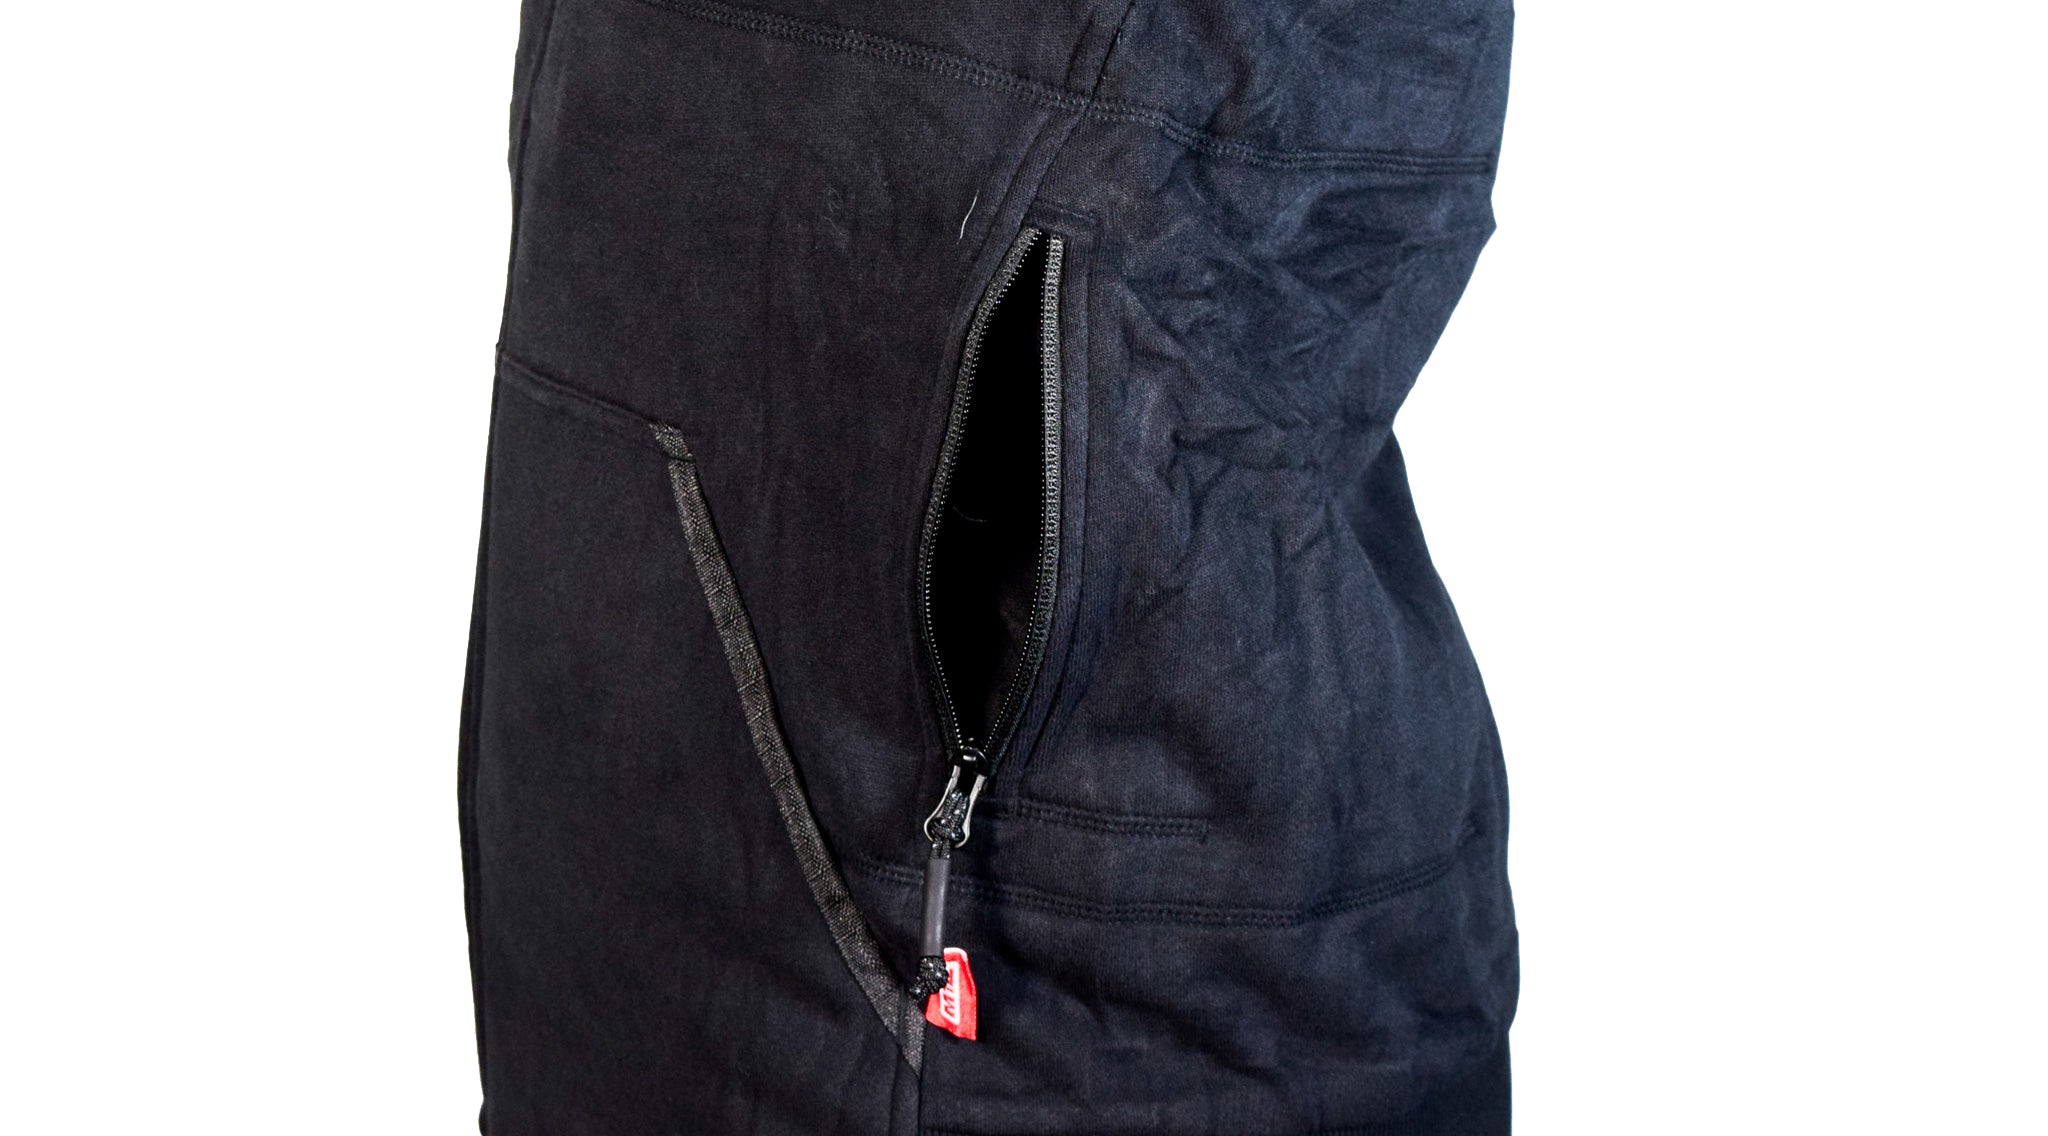 Milwaukee 336B-212X M12 Li-Ion Women's Black Heated Jacket Hoodie Kit (XX-Large)